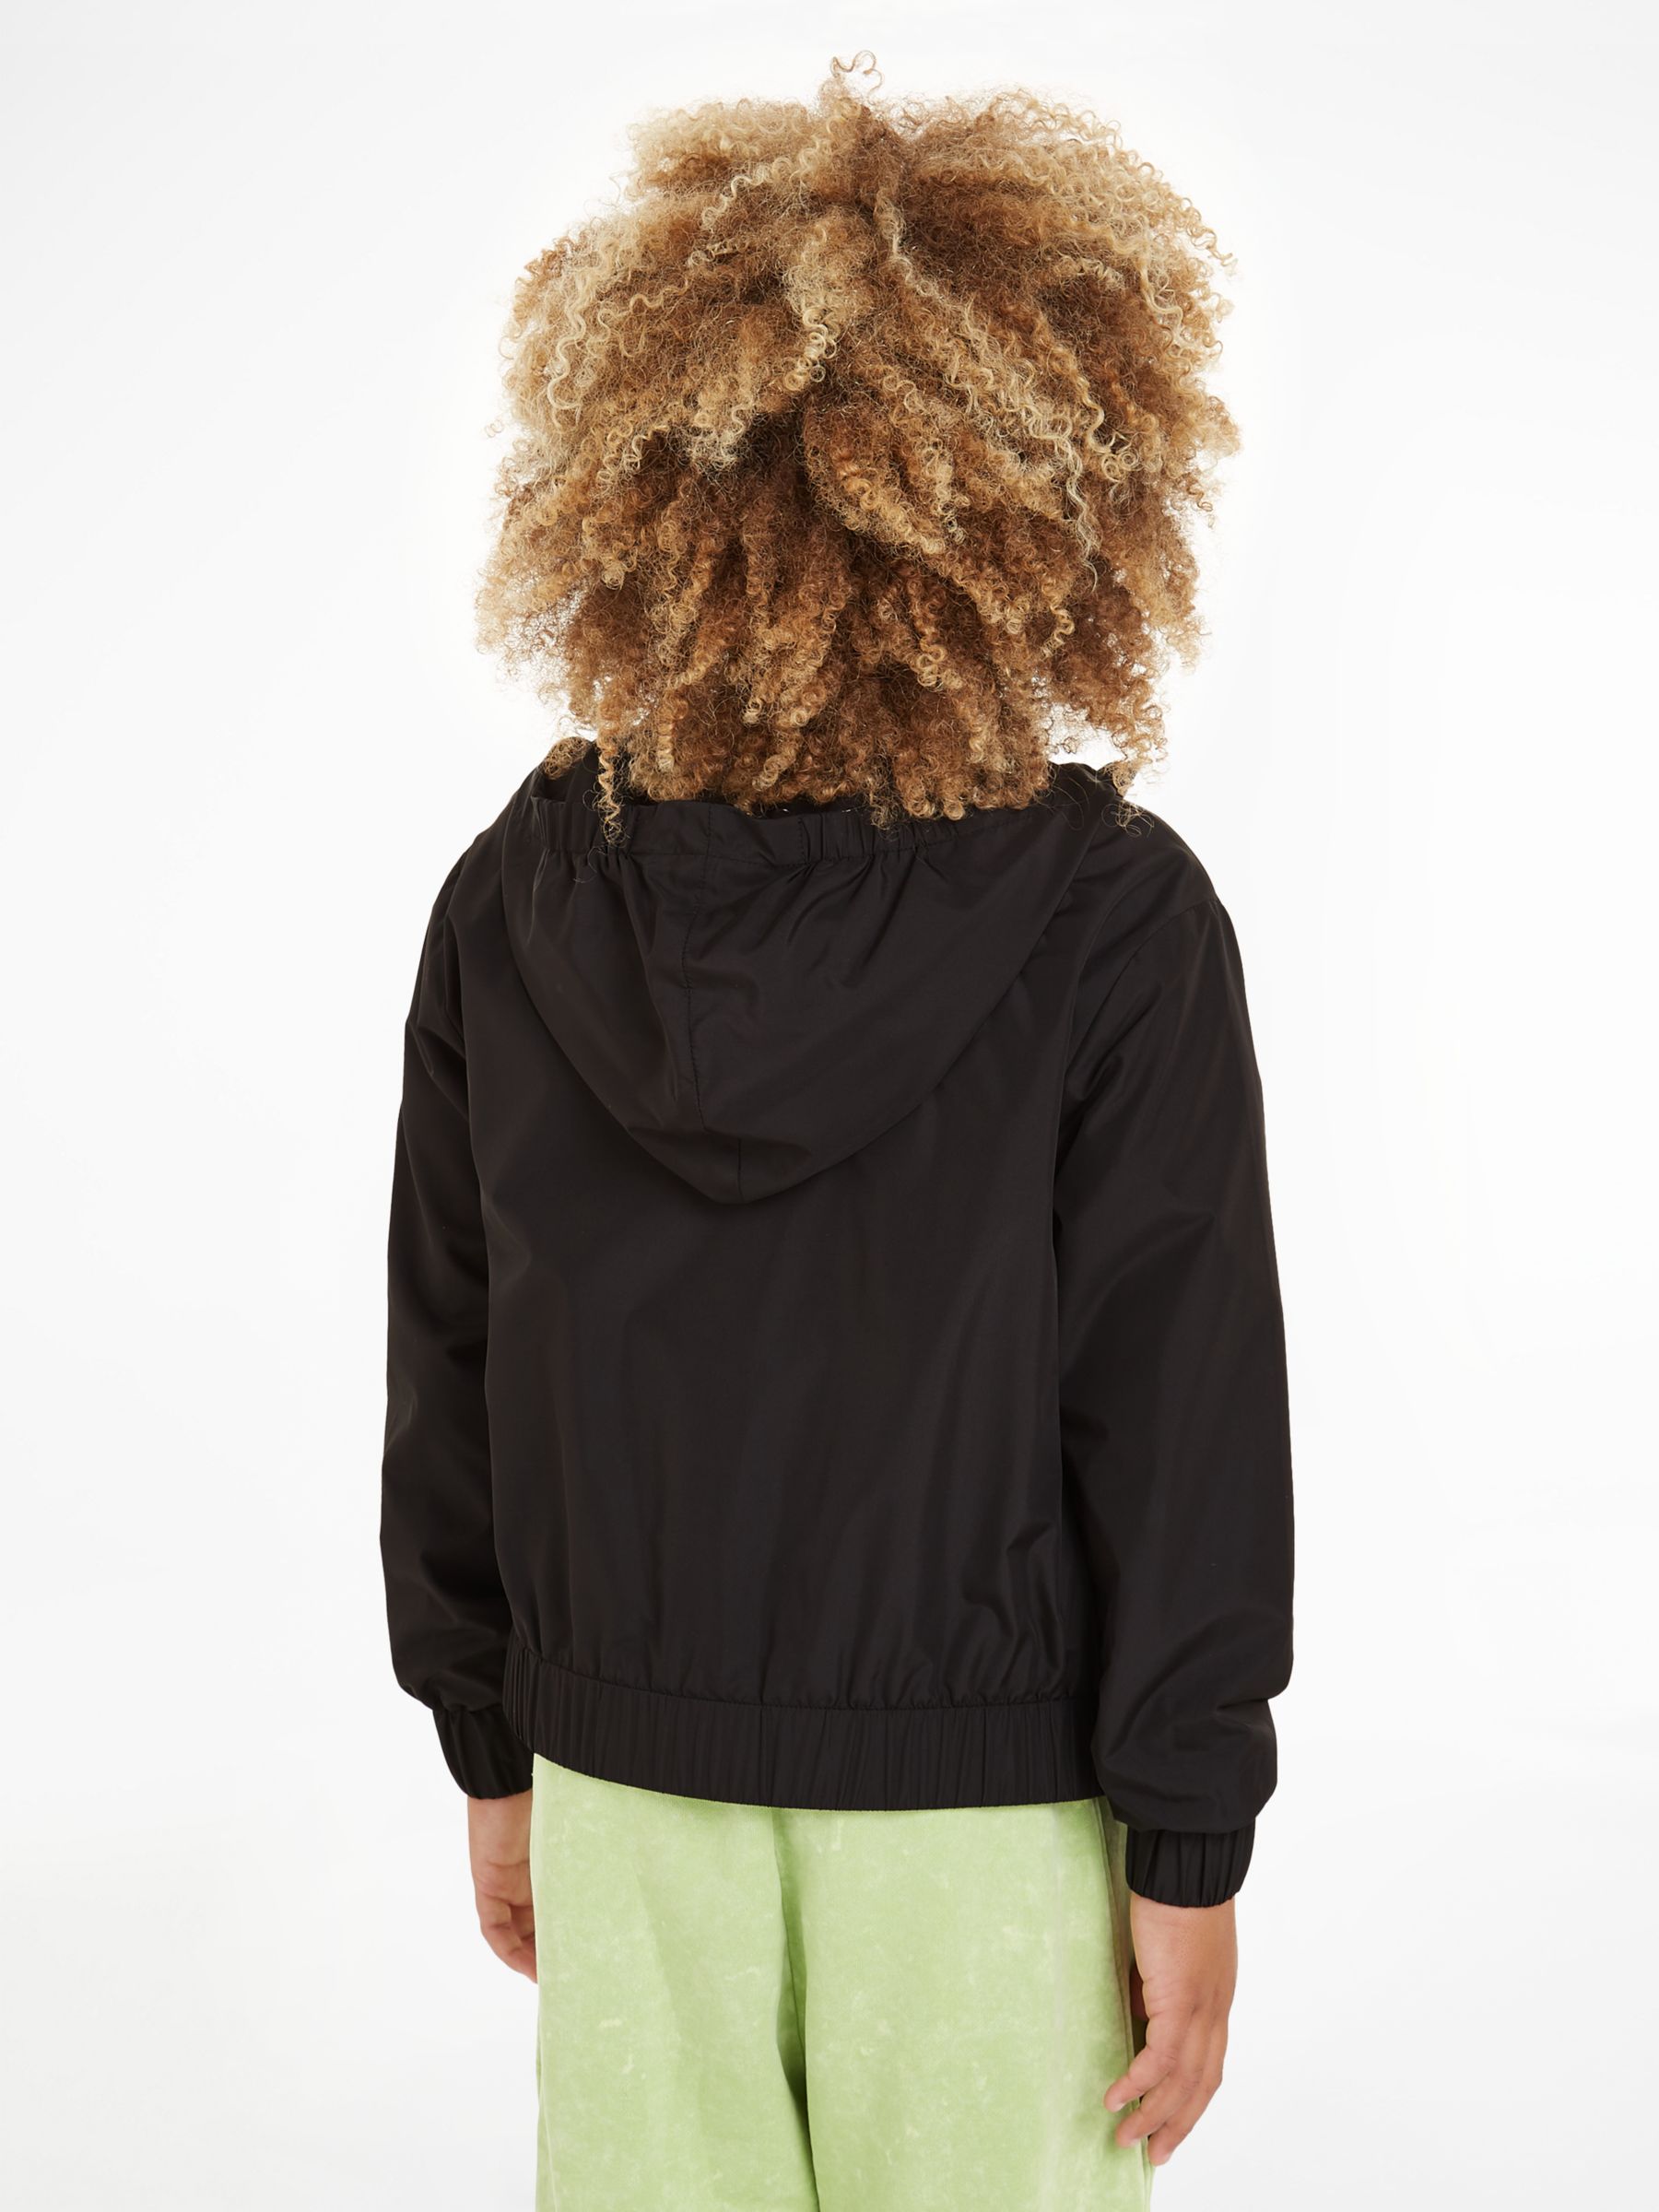 Calvin Klein Kids' Windbreaker Jacket, Black, 10 years